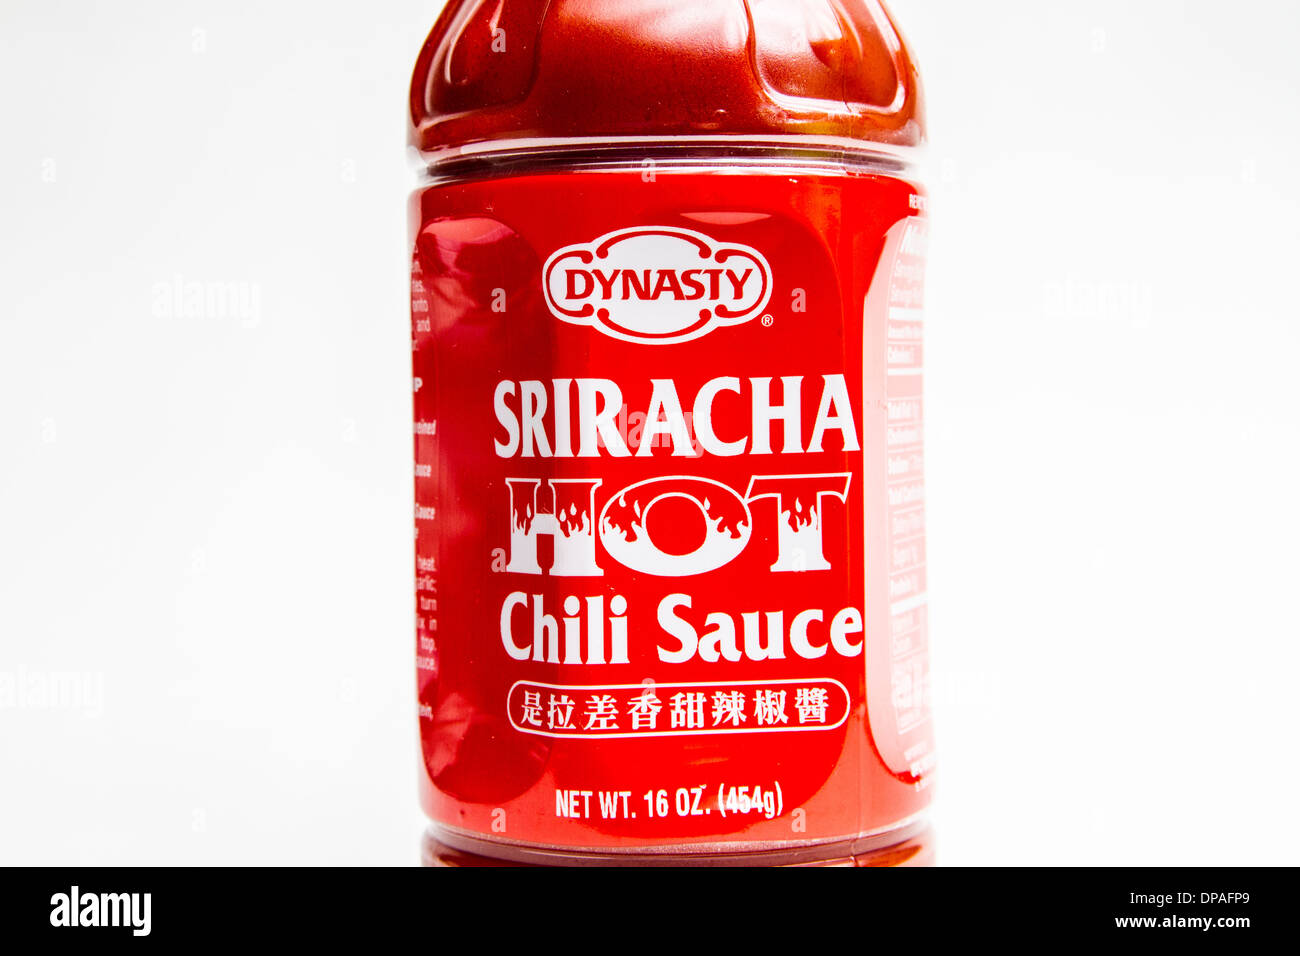 Eine Flasche Dyanasty Marke Sriracha hot Chili Sauce Januar 2014.  Einzelhändler wurden gezwungen zu anderen Marken zu drehen. Stockfoto